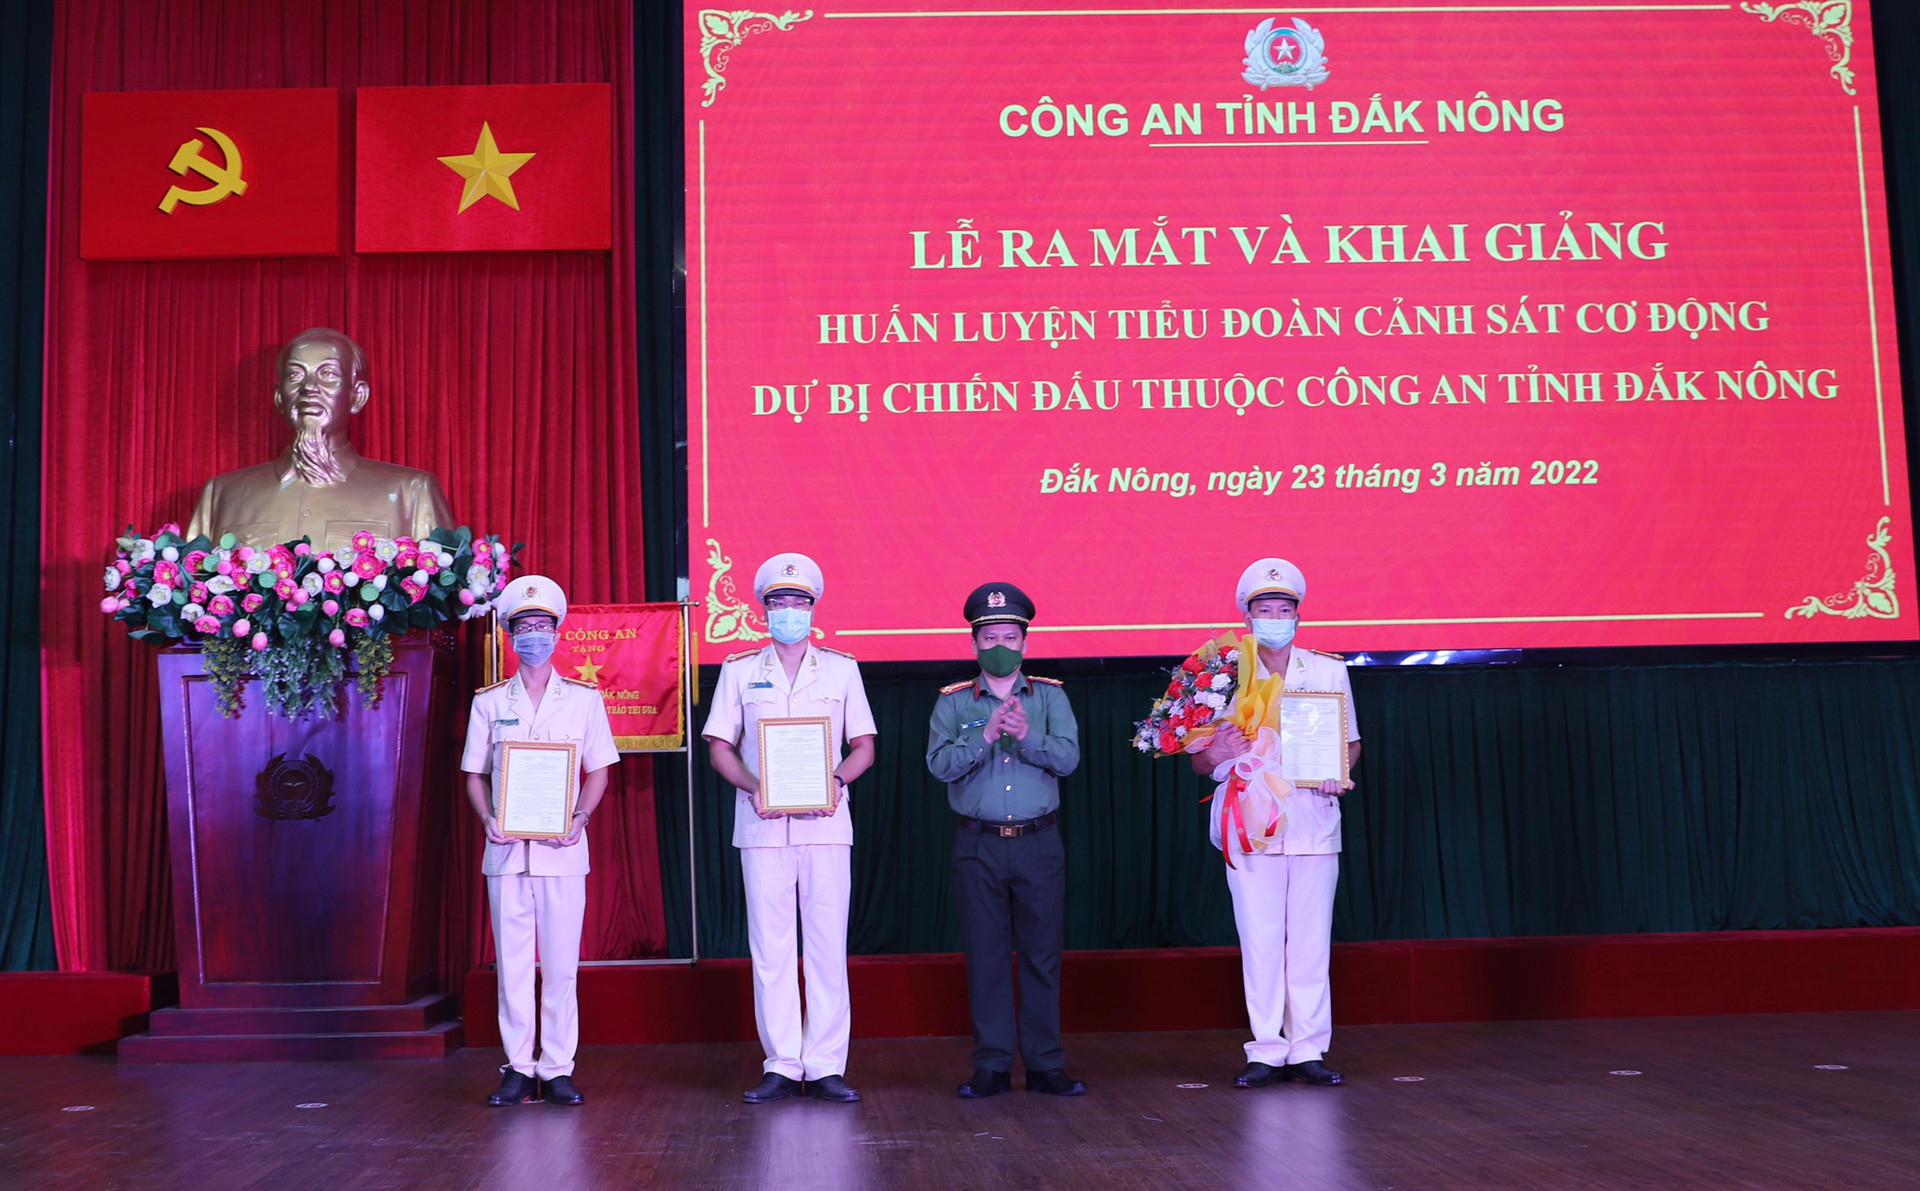 Đồng chí giám đốc Công an tỉnh Đắk Nông trao quyết định cho Ban chỉ huy tiểu đoàn.